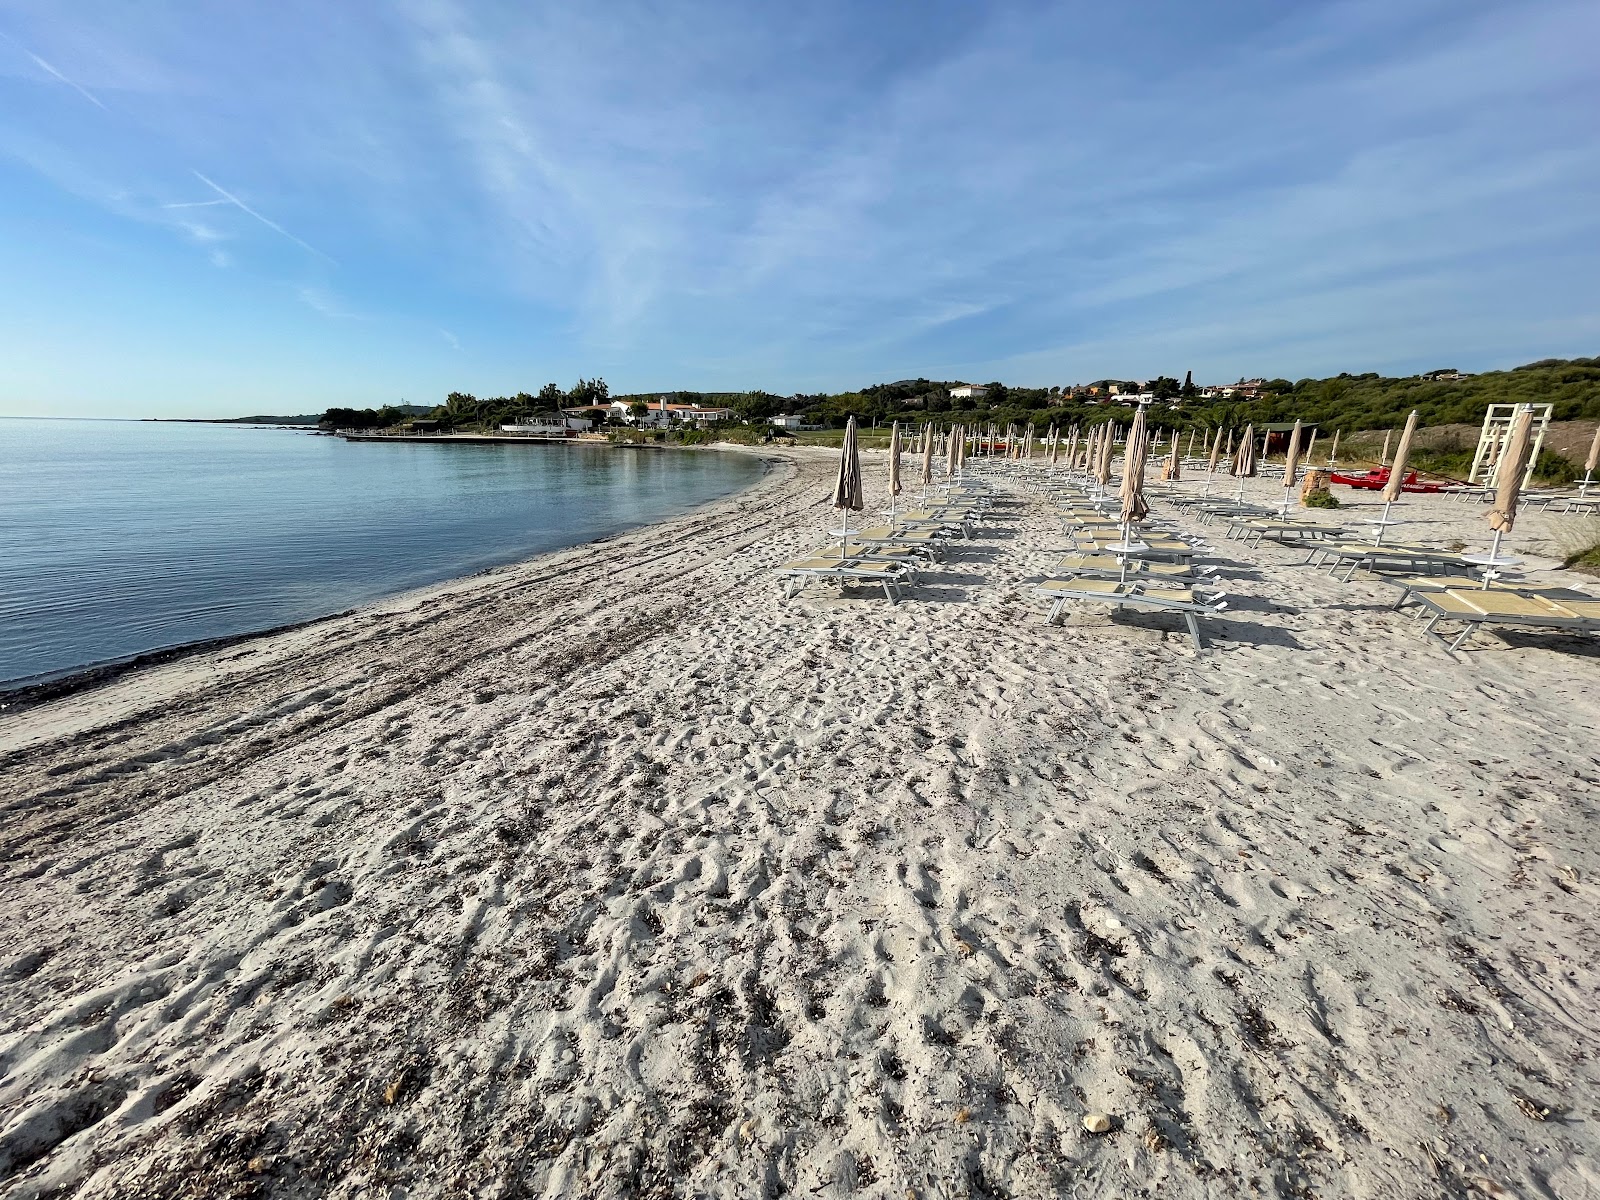 Zdjęcie Spiaggia del Veraclub Amasea - popularne miejsce wśród znawców relaksu